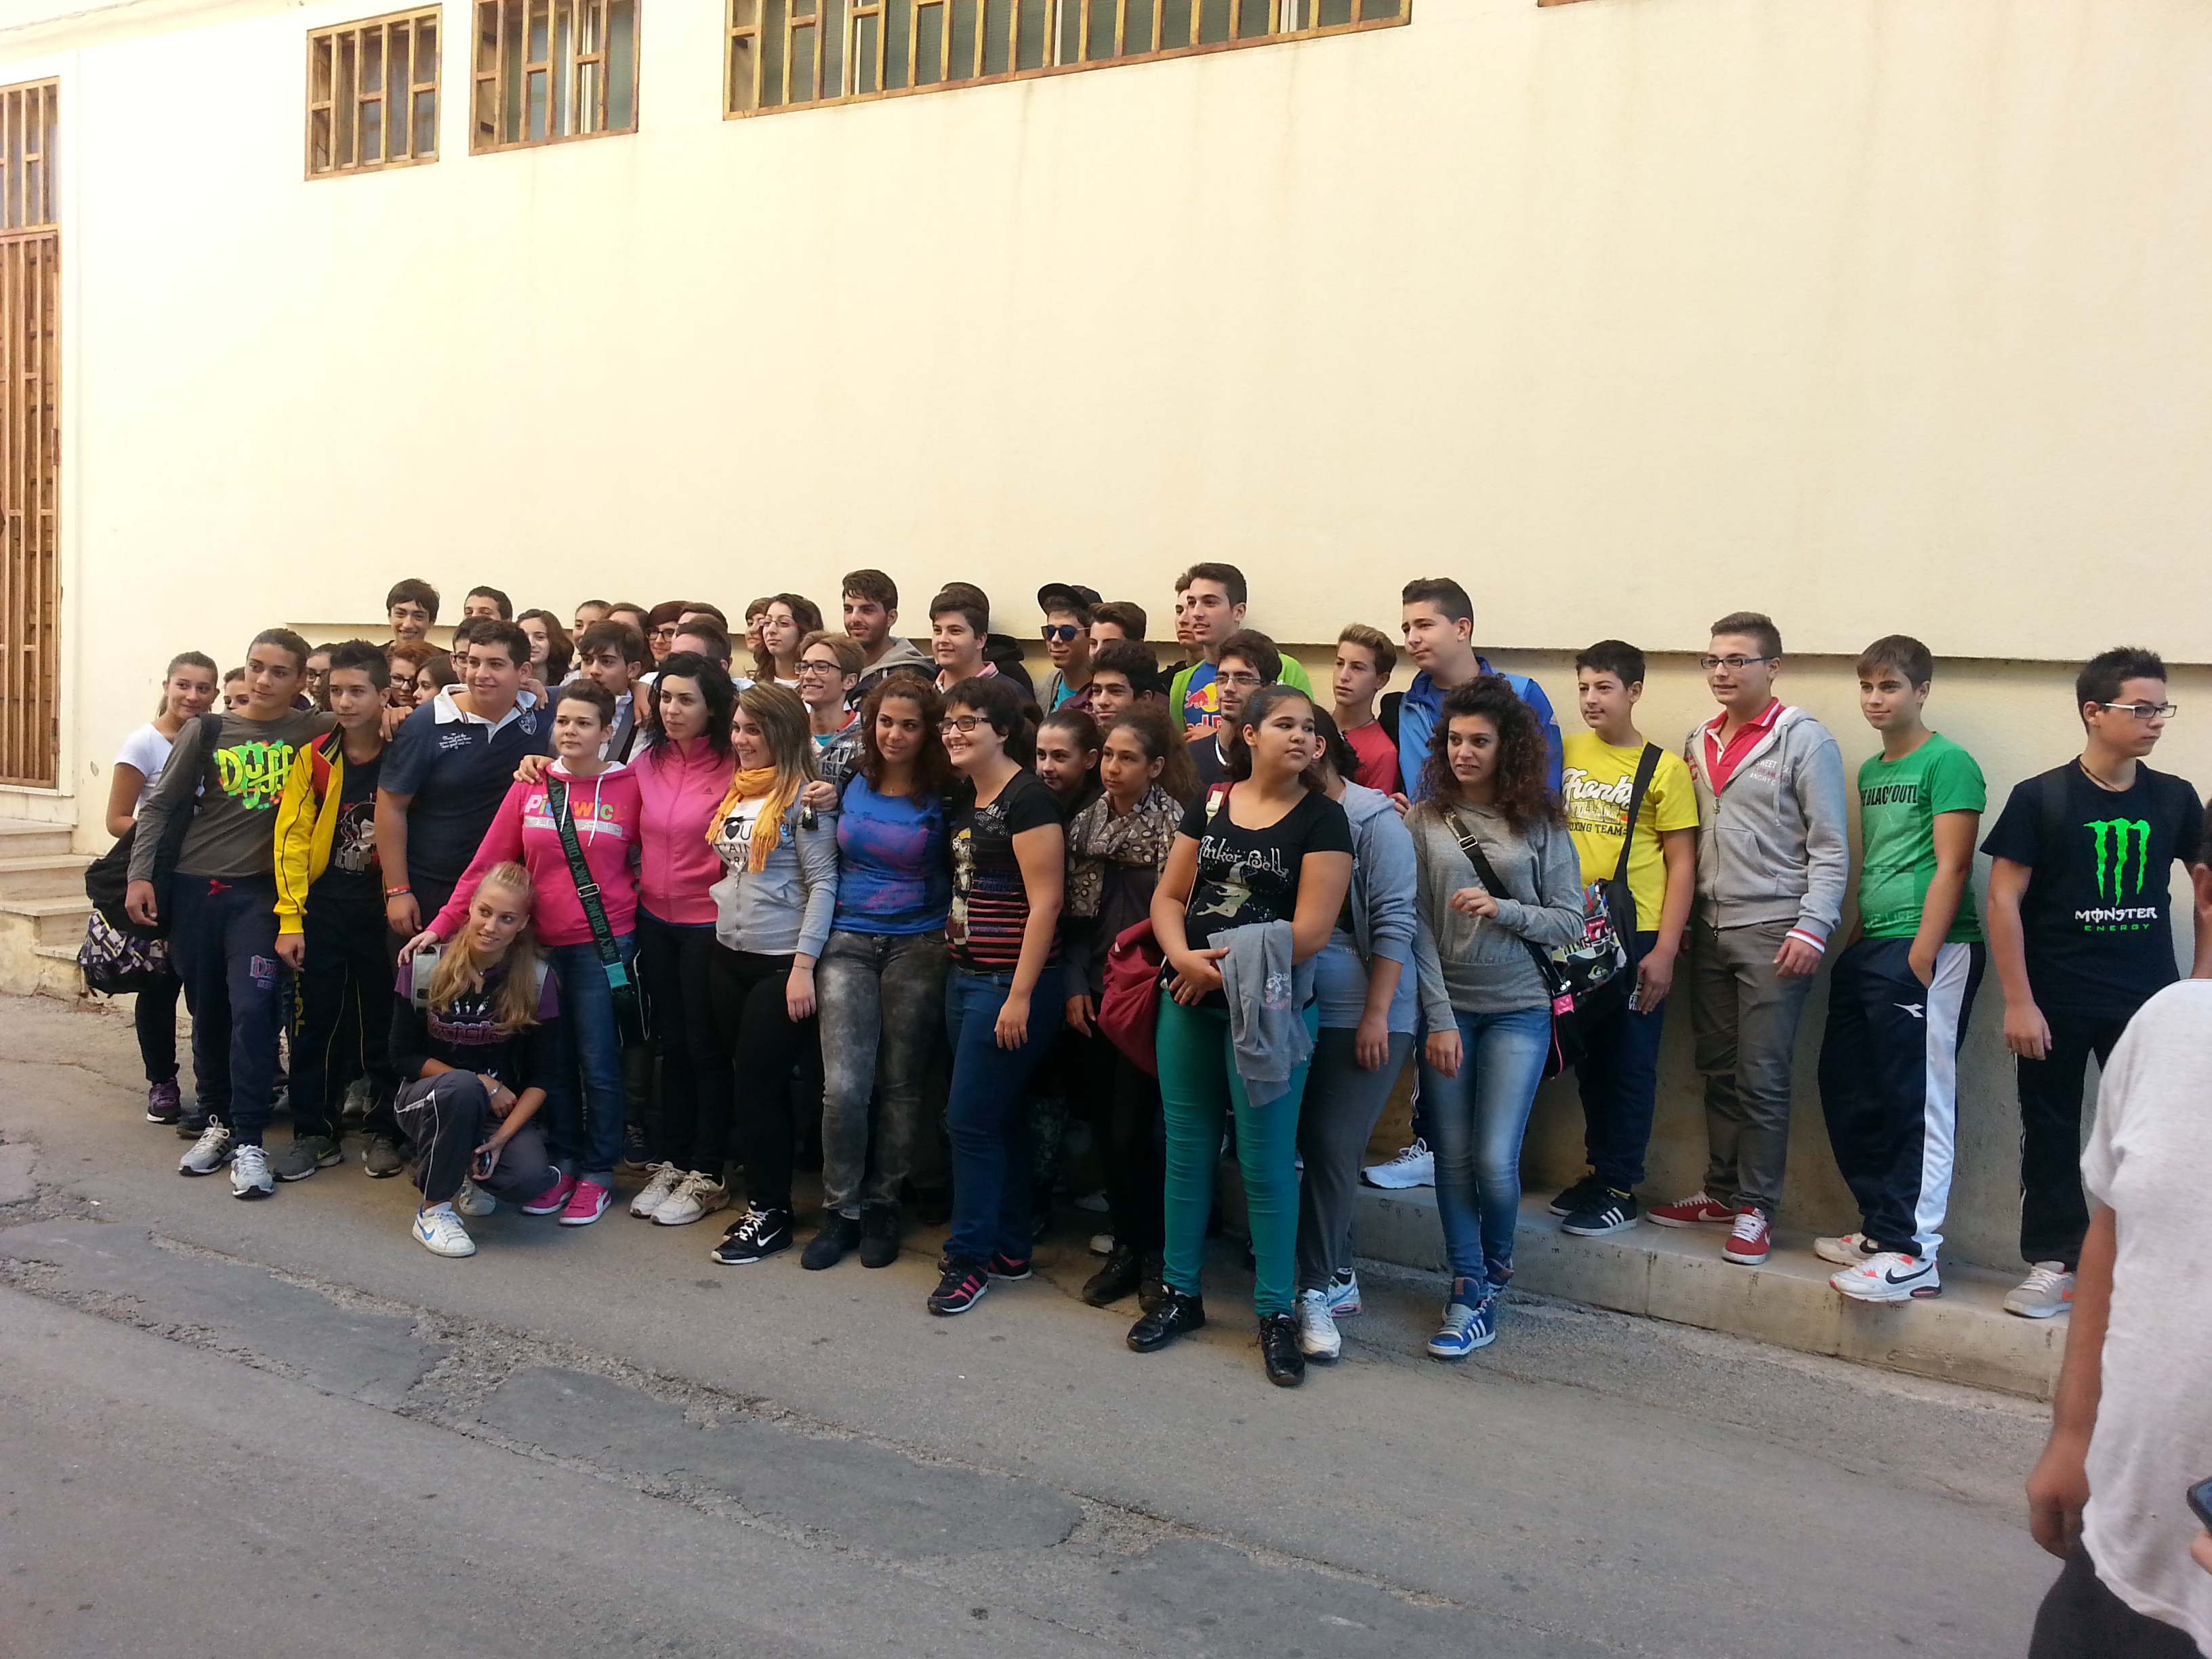  Gli studenti del “F.Besta” in sciopero, il sindaco li rassicura: “Nessuna aula verrà soppressa”